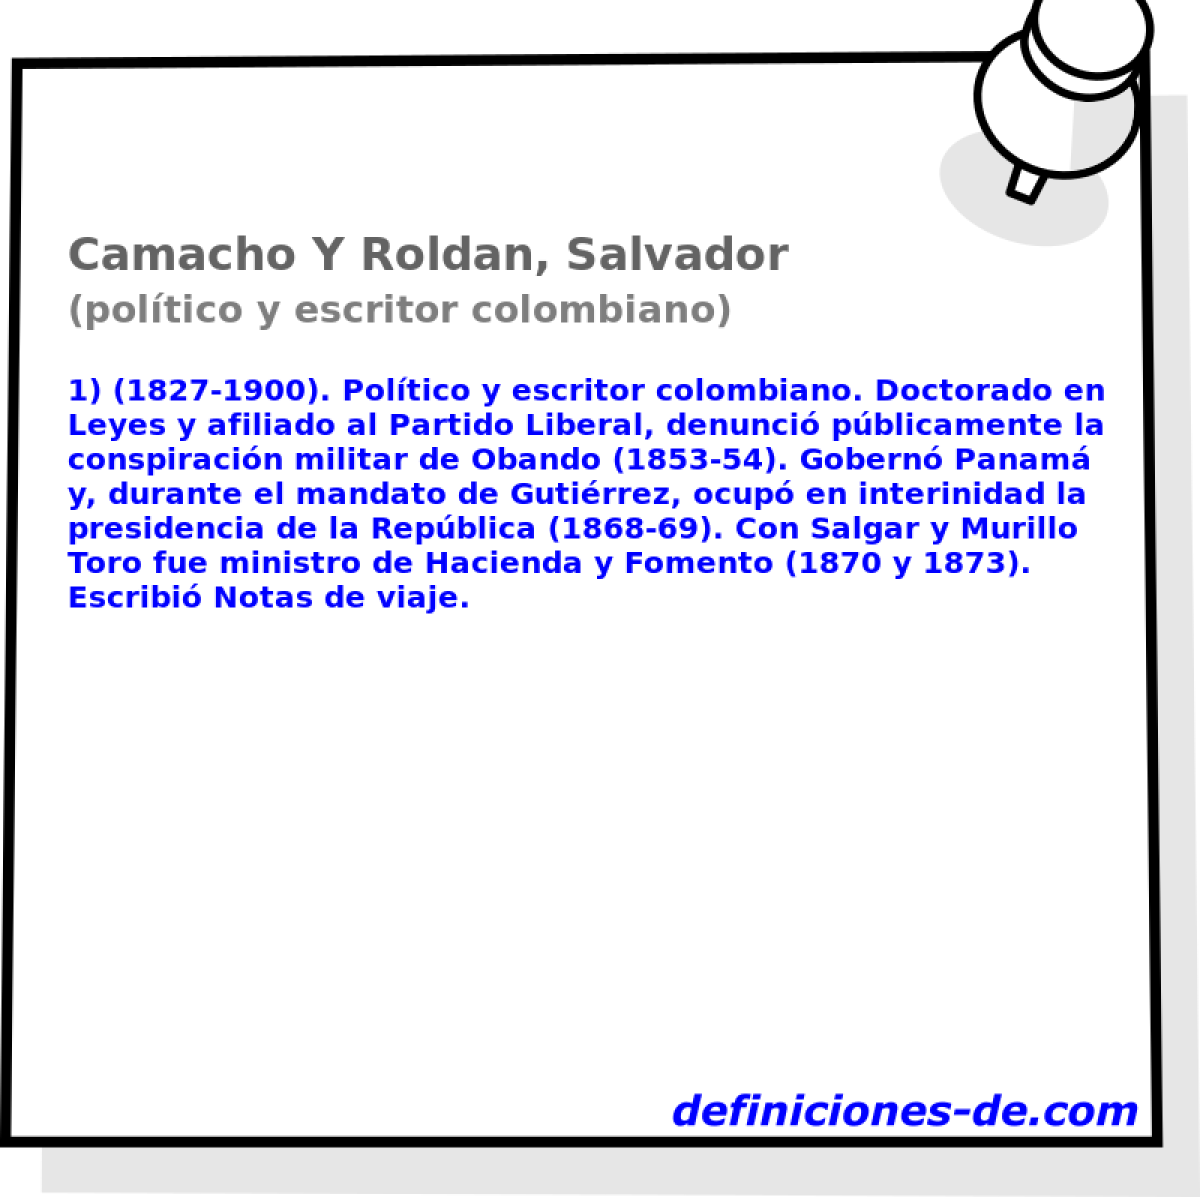 Camacho Y Roldan, Salvador (poltico y escritor colombiano)